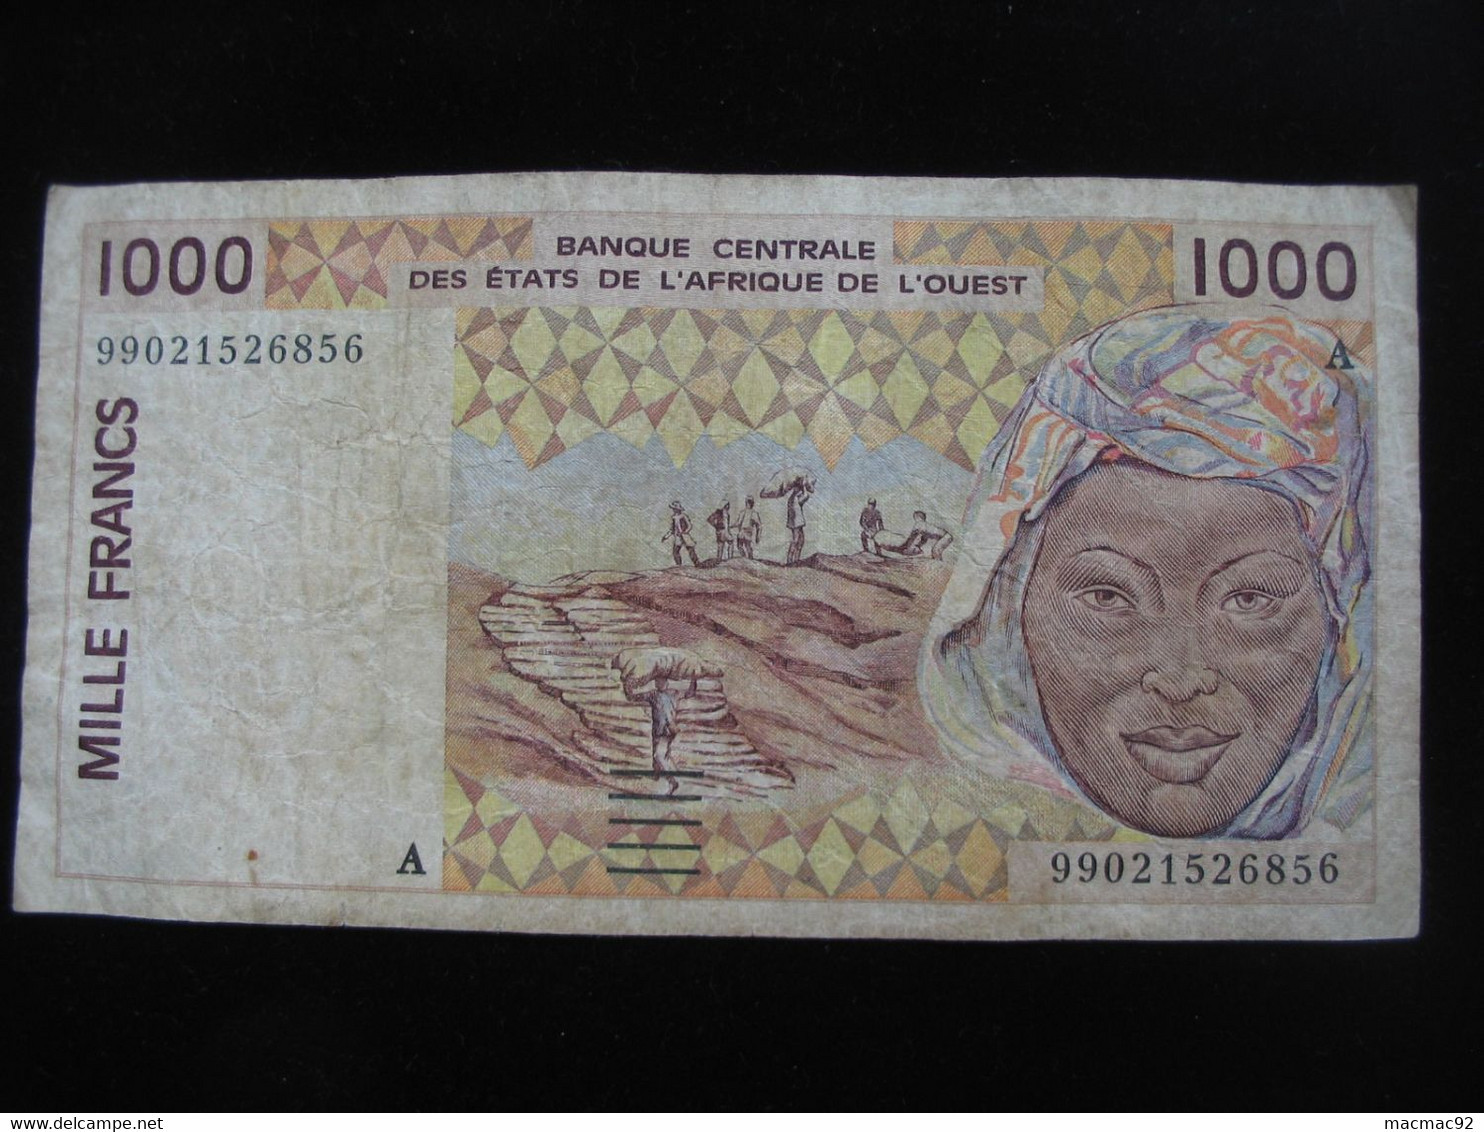 COTE D'IVOIRE - 1000 Francs  1999 A - Banque Centrale Des états De L'Afrique De L'ouest  **** ACHAT IMMEDIAT **** - Ivoorkust